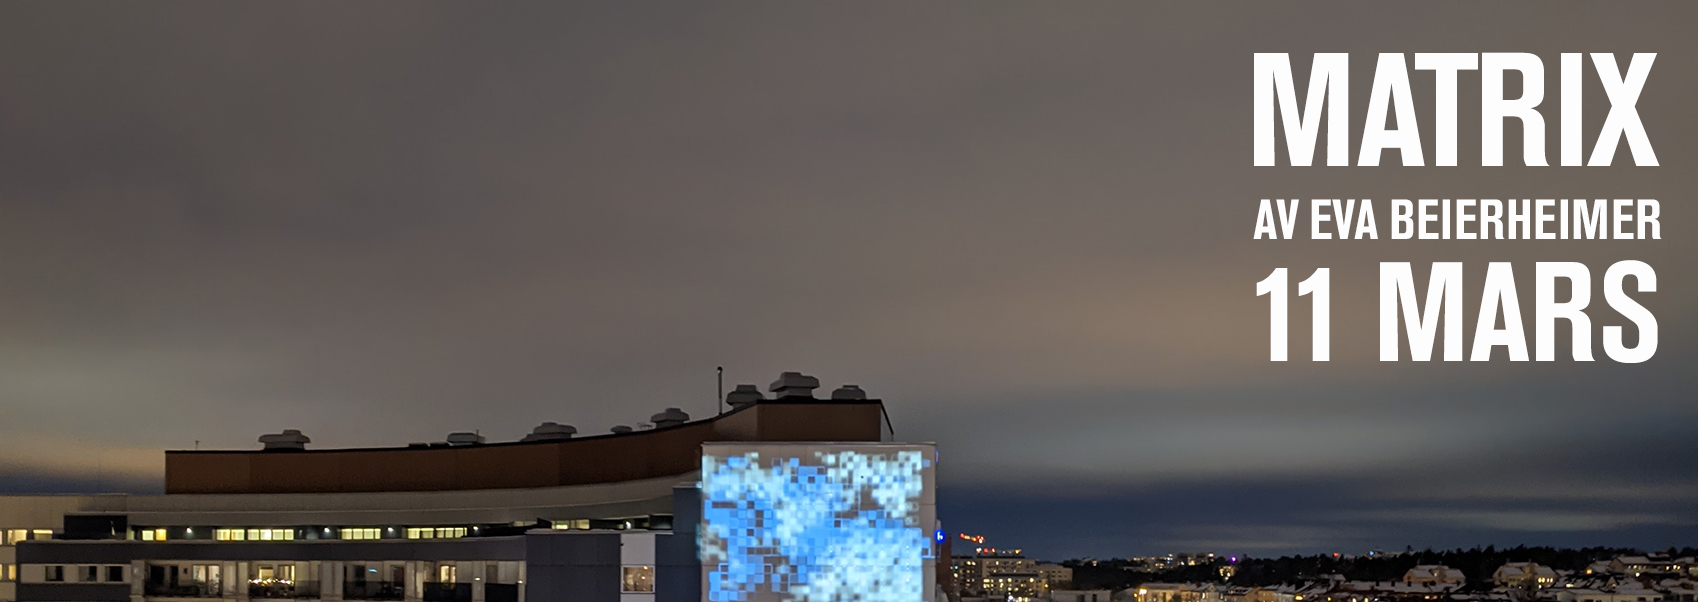 Toppen av konstverket Matrix hintas på kvällshimlen. Motiv i blåa pixlar.